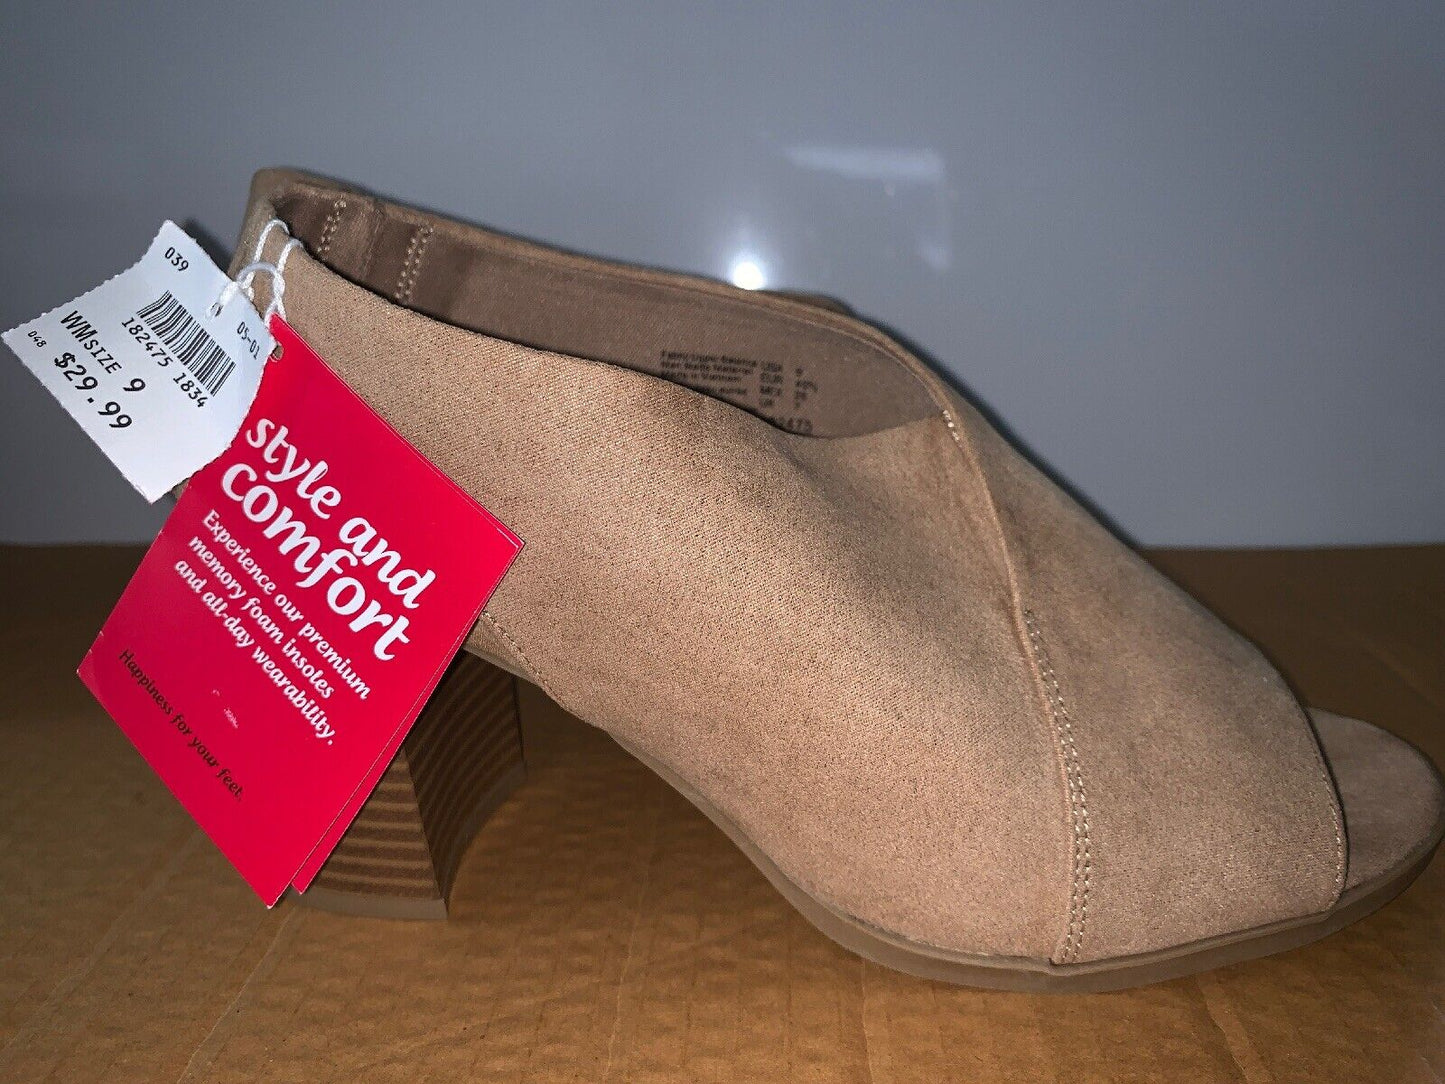 NEW Dexflex Comfort TILDA NUDE Women's Heels Shoes Size 9